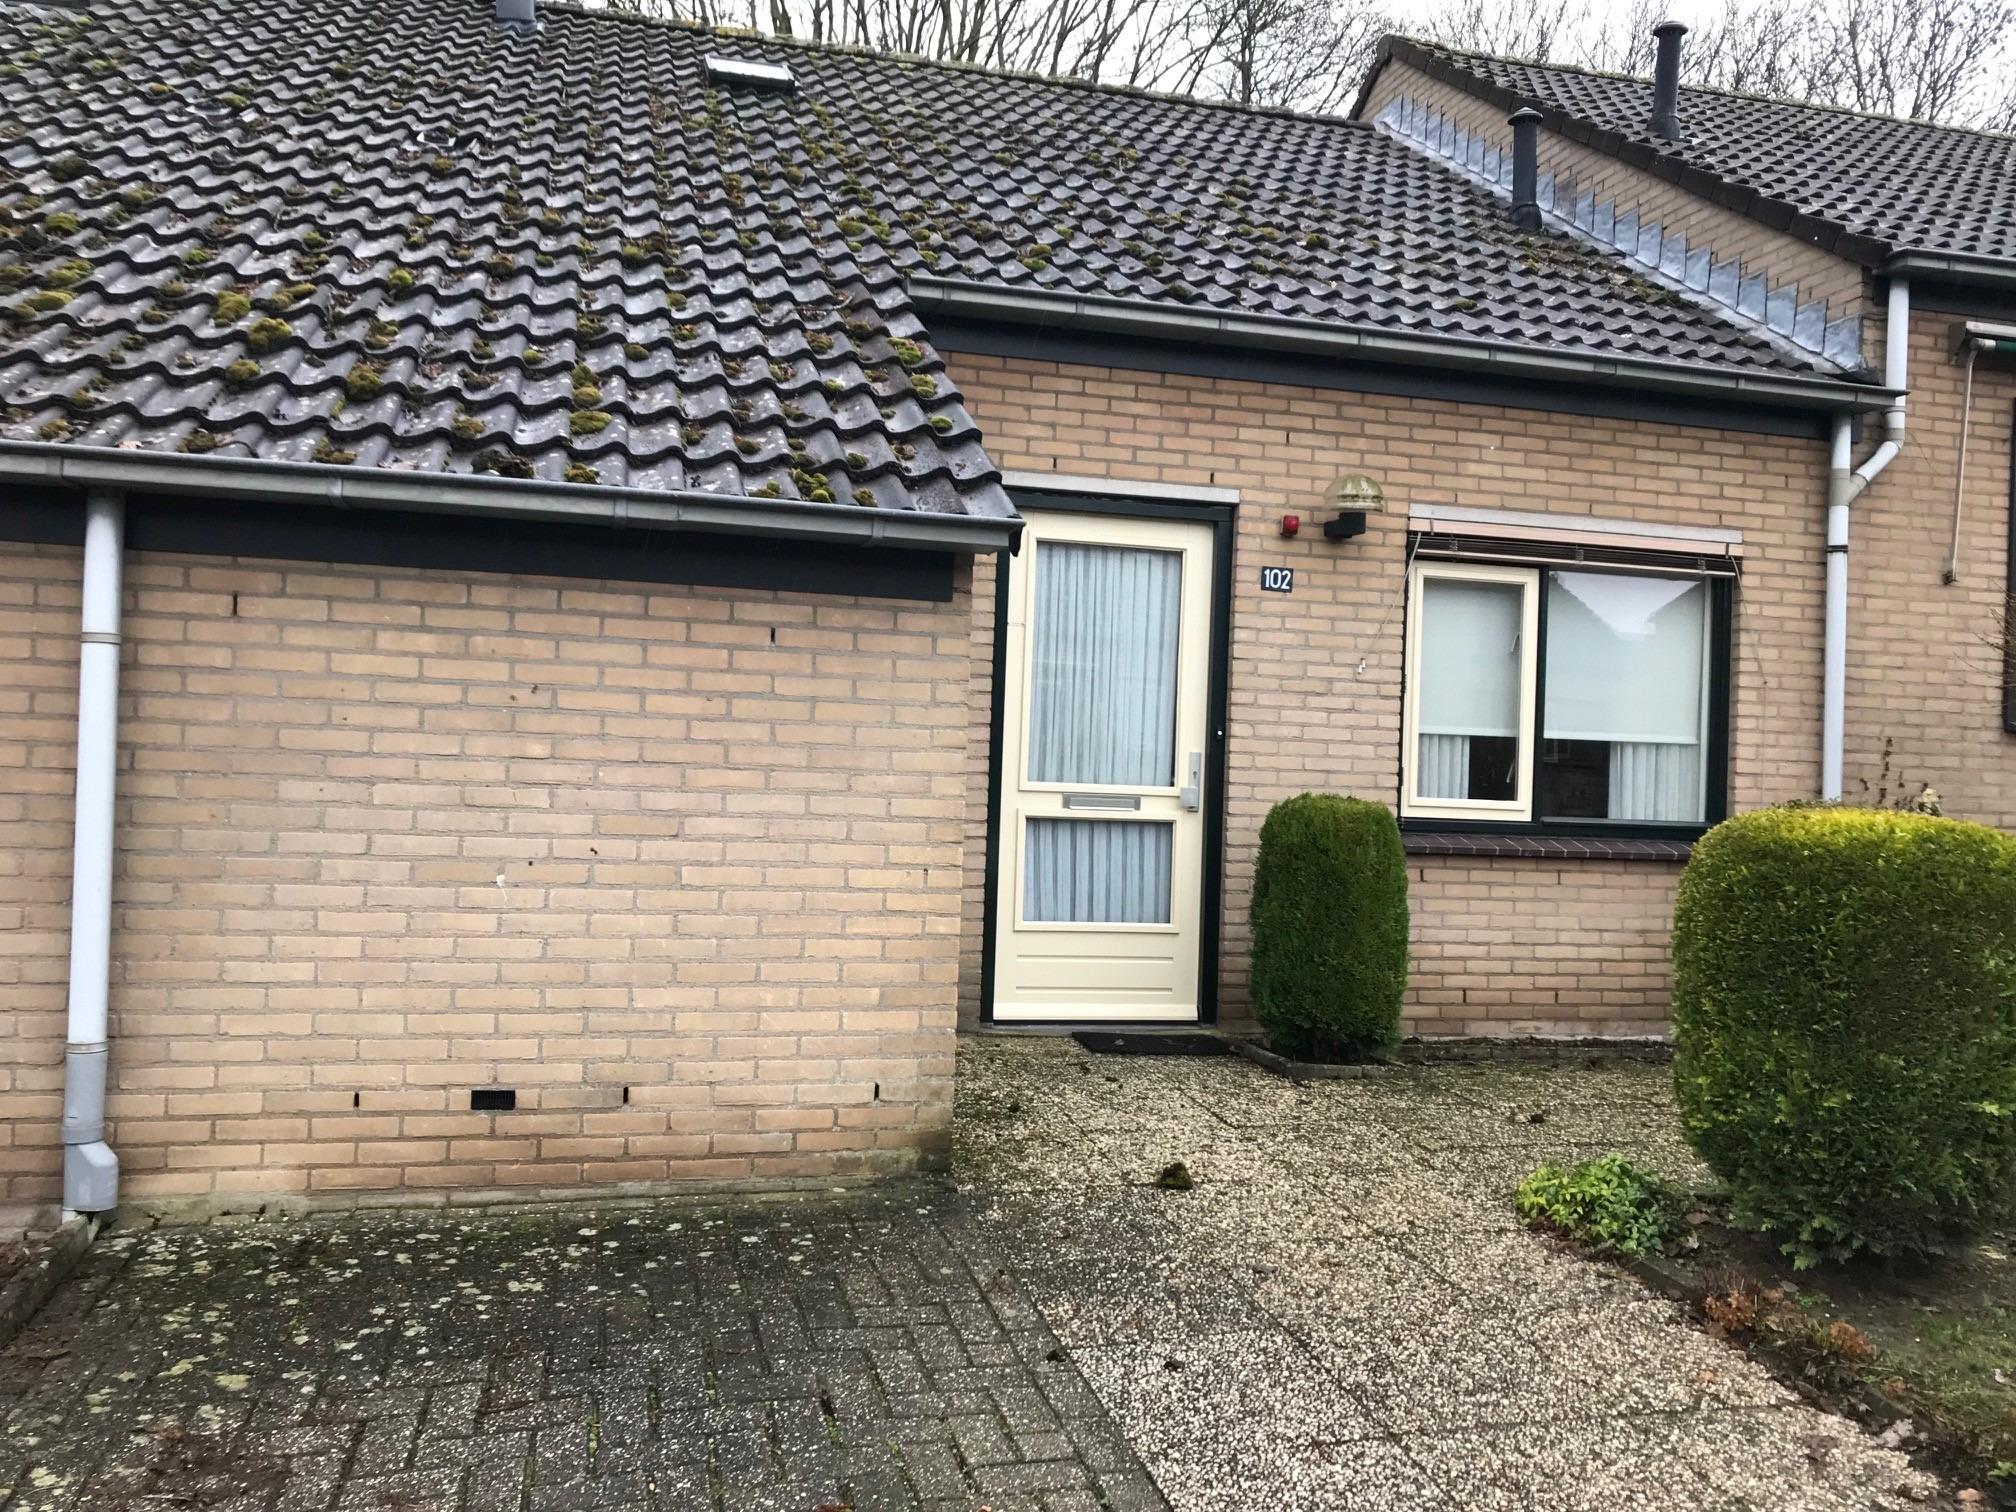 Lievensweg 102, 6562 XP Groesbeek, Nederland